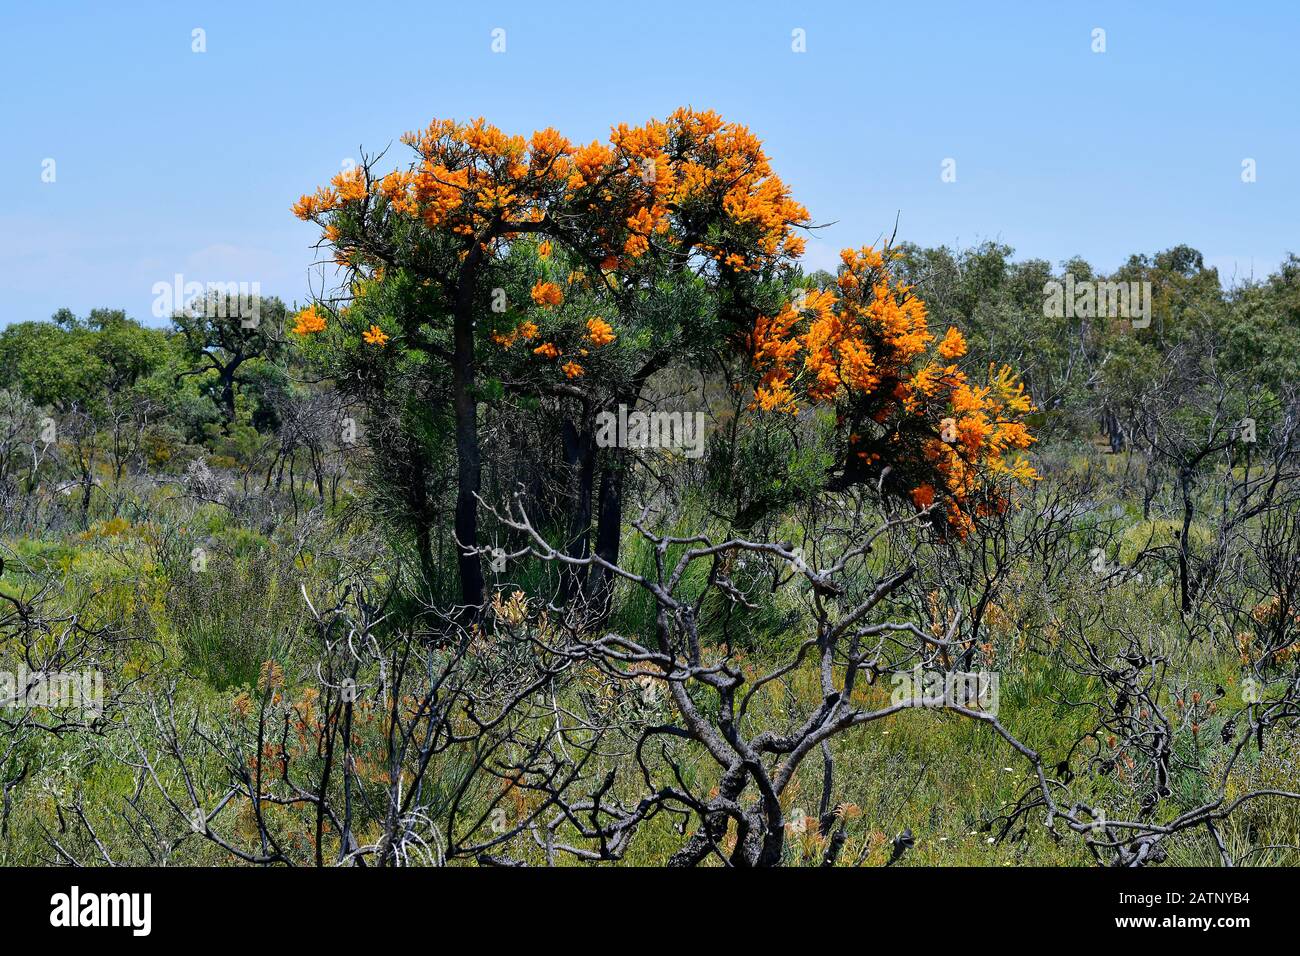 Australia, Australia Occidental Nuytsia floribunda aka Árbol de Navidad Foto de stock